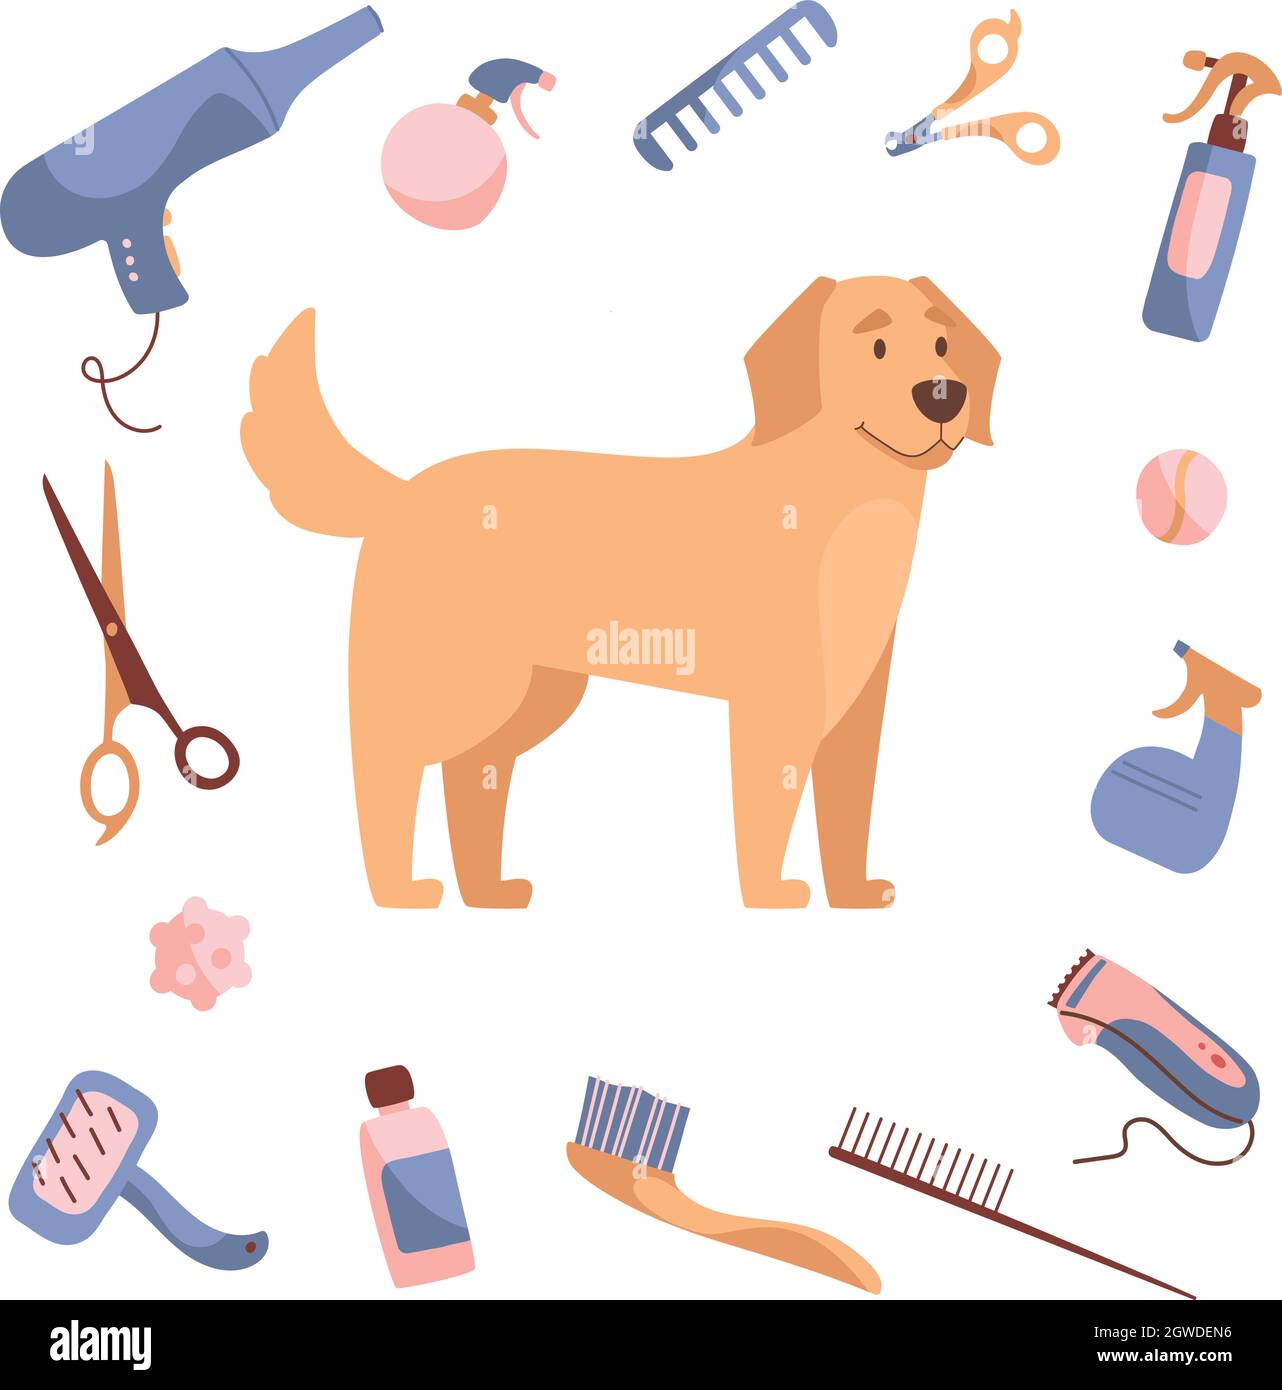 Hundepflege im Cartoon-Stil. Golden Retriever und Pflegeprodukte, Shampoos,  Drahtschneider, Kämme, Scheren. Vektordarstellung auf weißem Hintergrund  isoliert Stock-Vektorgrafik - Alamy